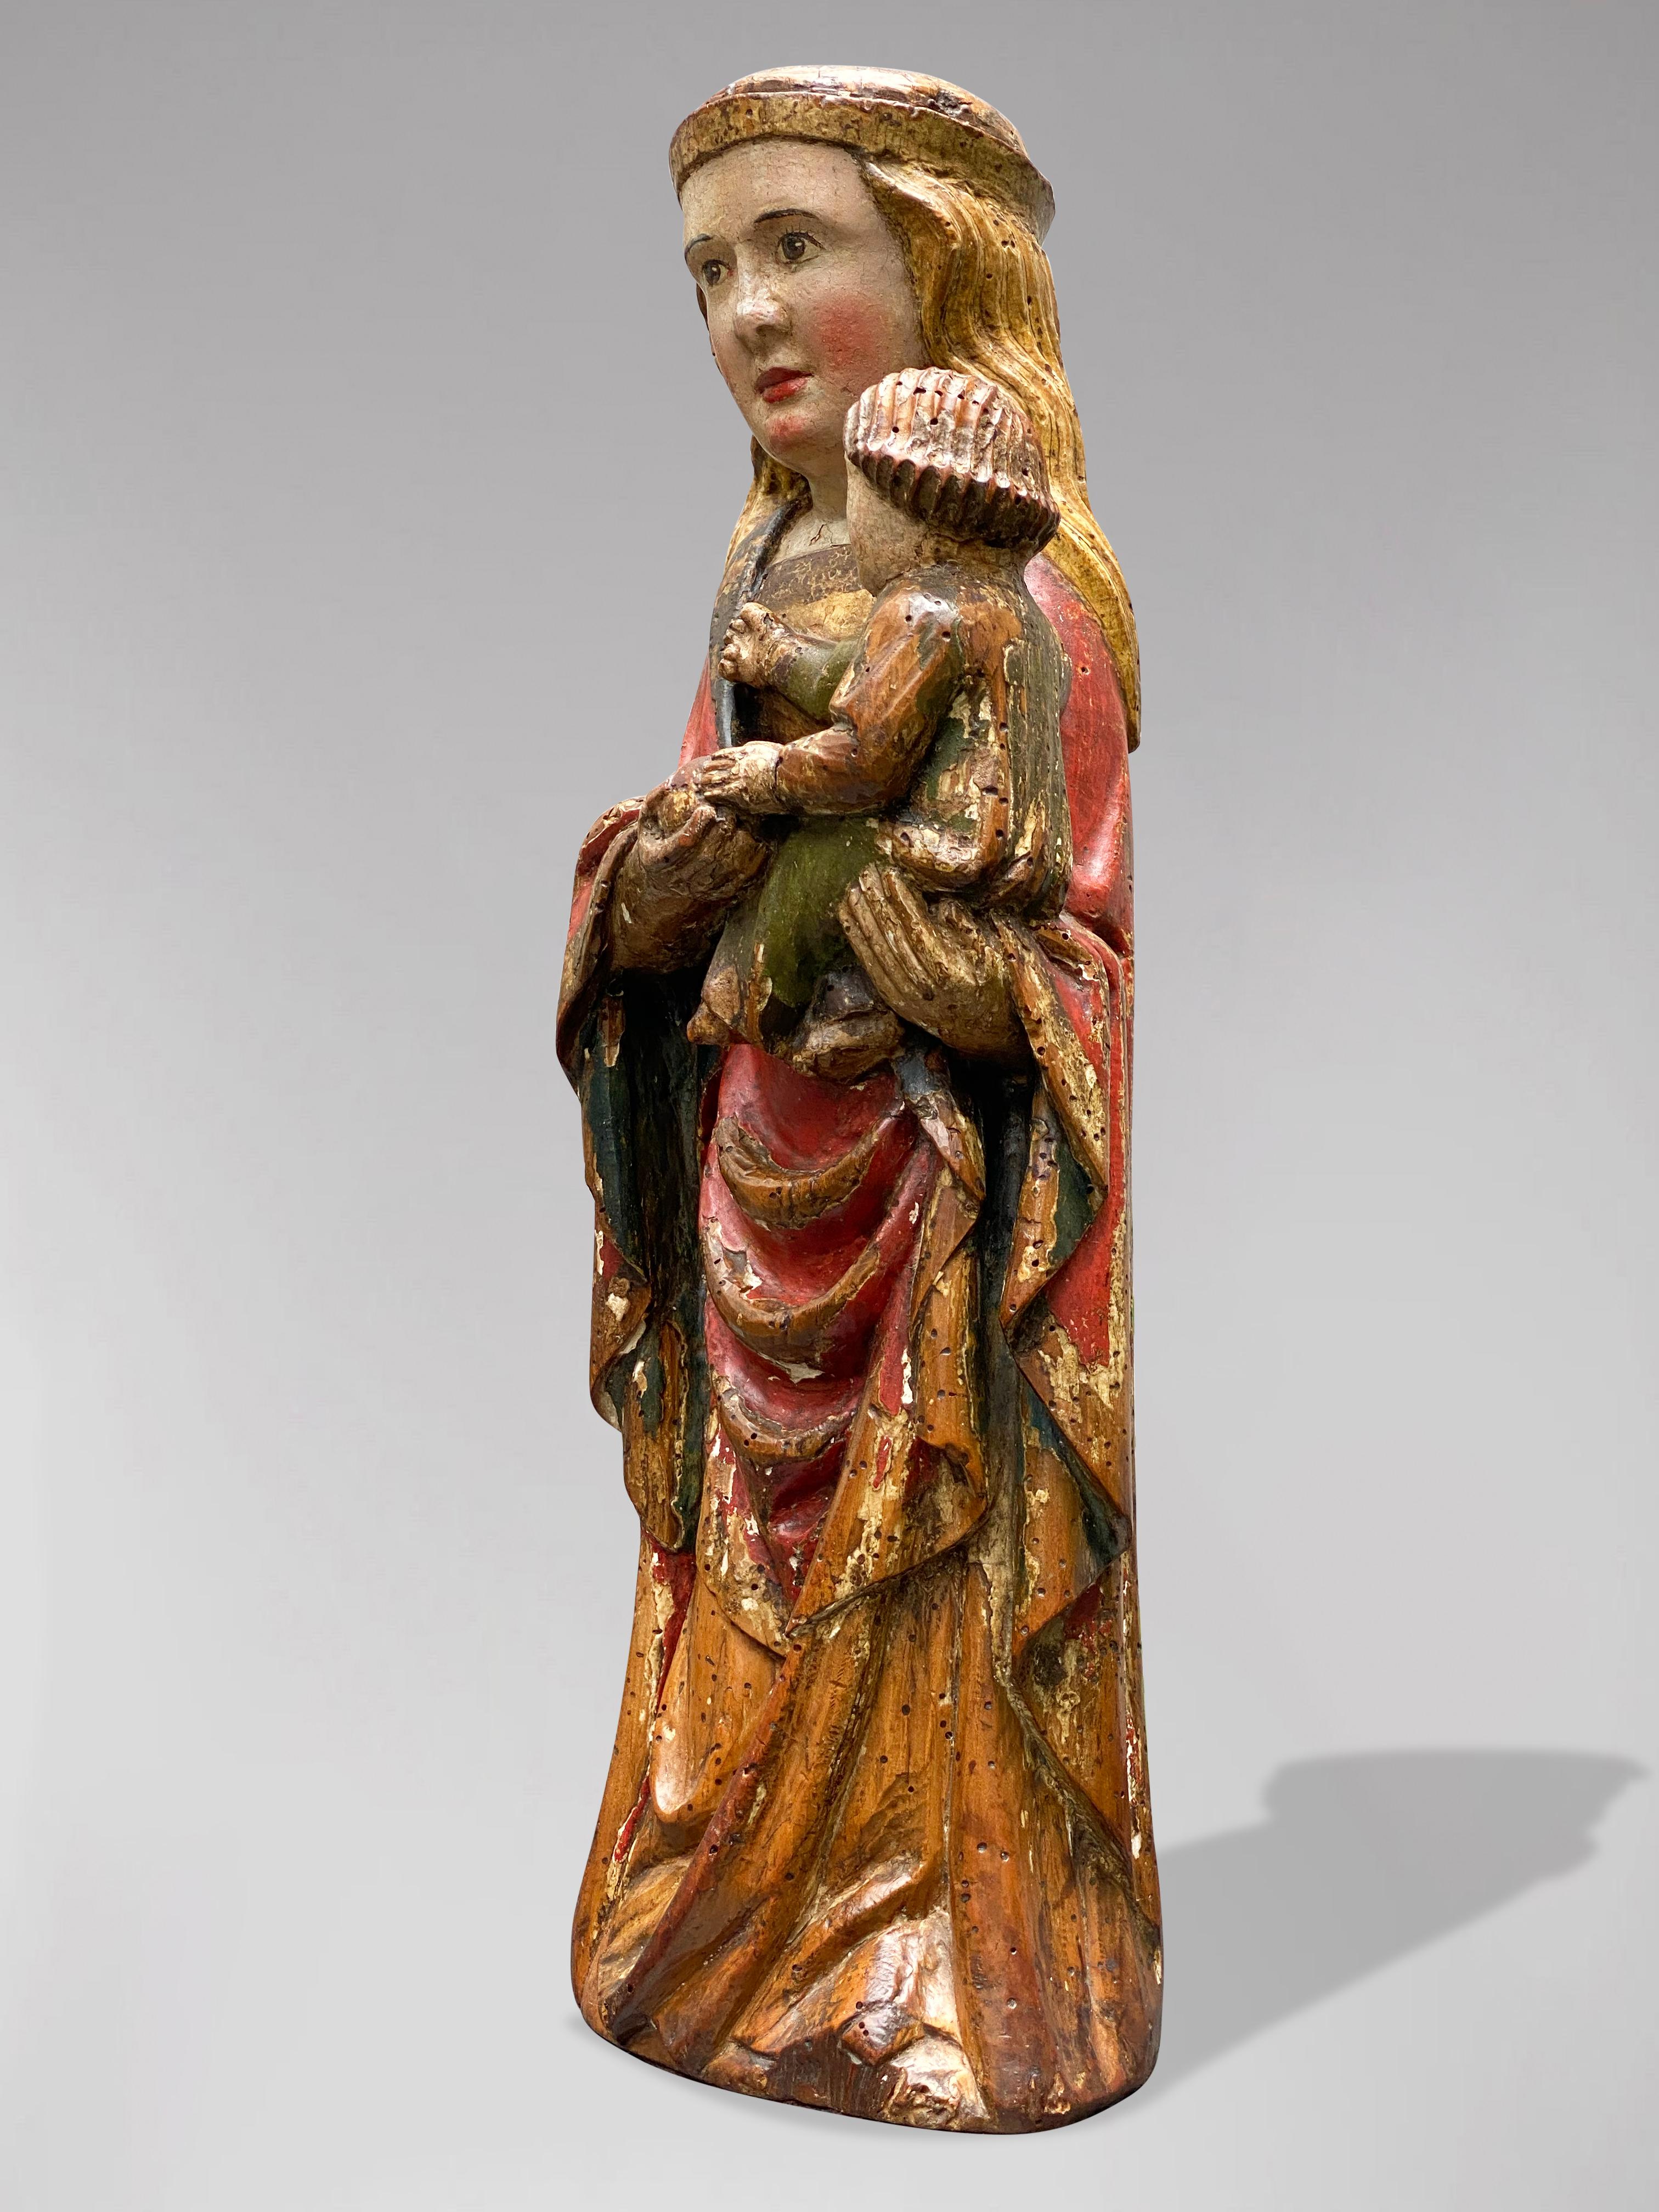 Spanische Statue der Jungfrau Maria mit dem Kind Jezus, um 1600 – Sculpture von Unknown